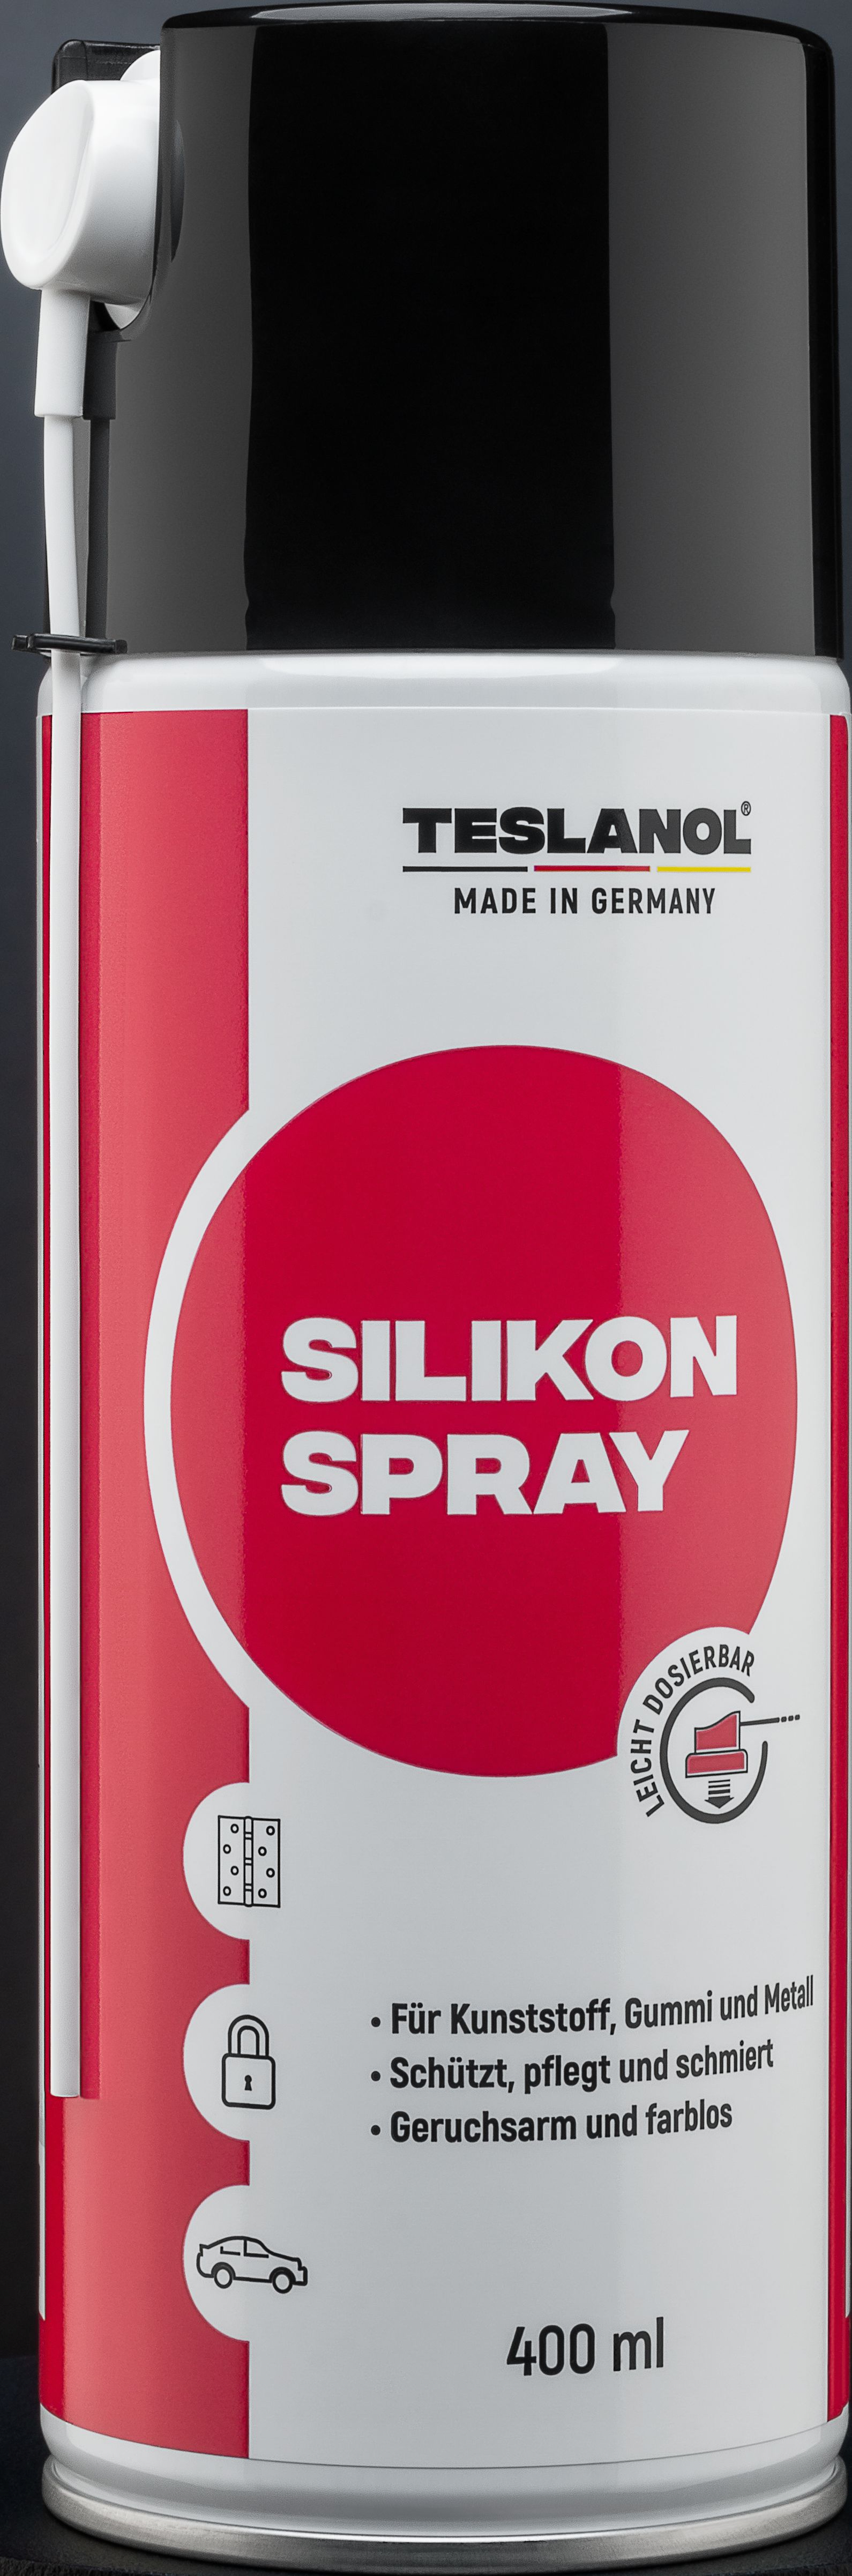 Preview: TESLANOL S Silikon-Spray isoliert-schützt-schmiert 400 ml